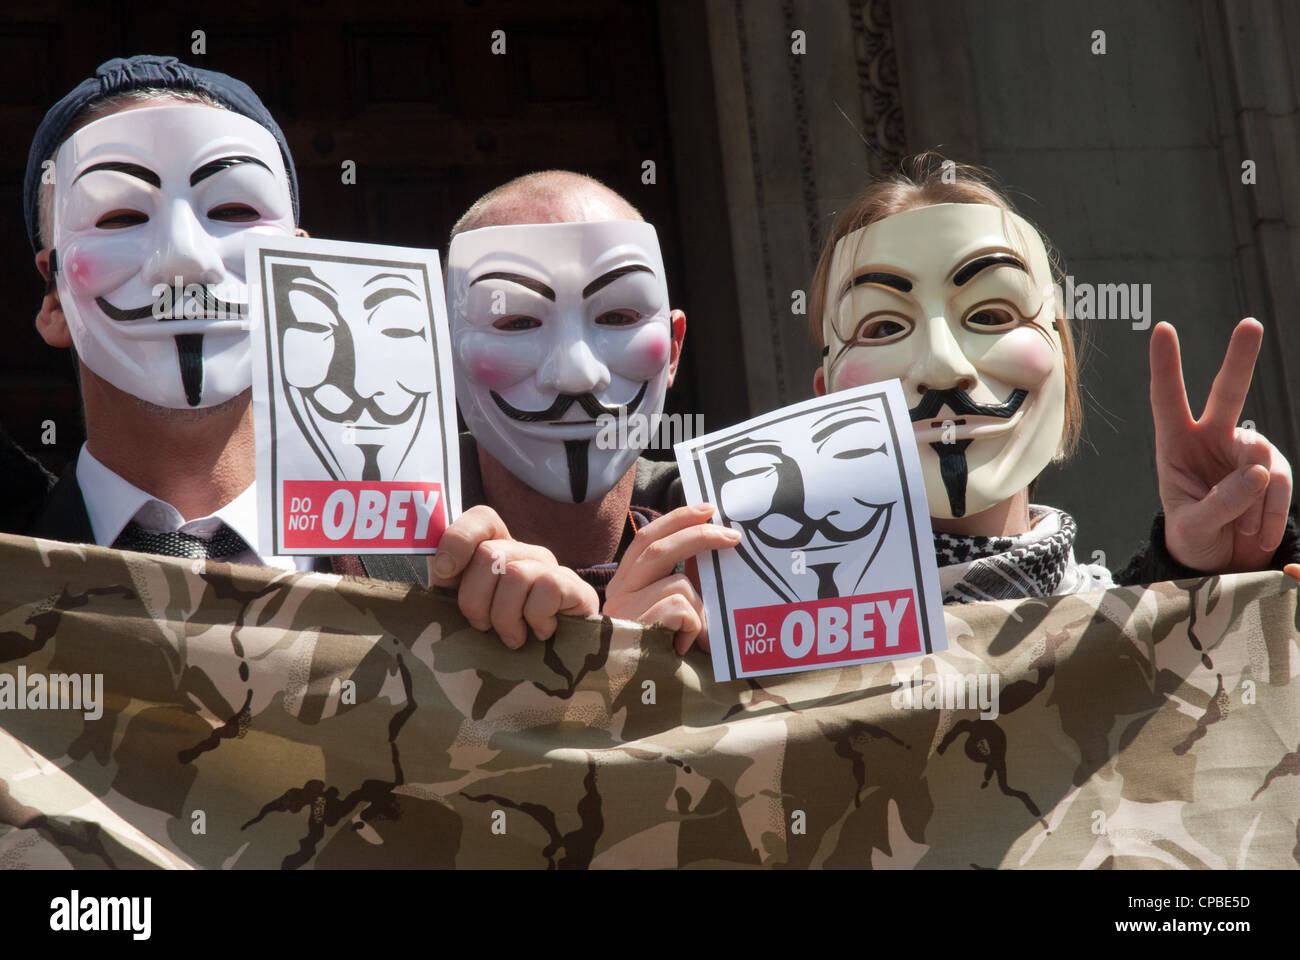 Ocupar, Londres, Reino Unido. Manifestación contra el capitalismo parte de un día de acción global. 3 manifestantes en Anonymous máscaras con carteles "no obedecer' Foto de stock